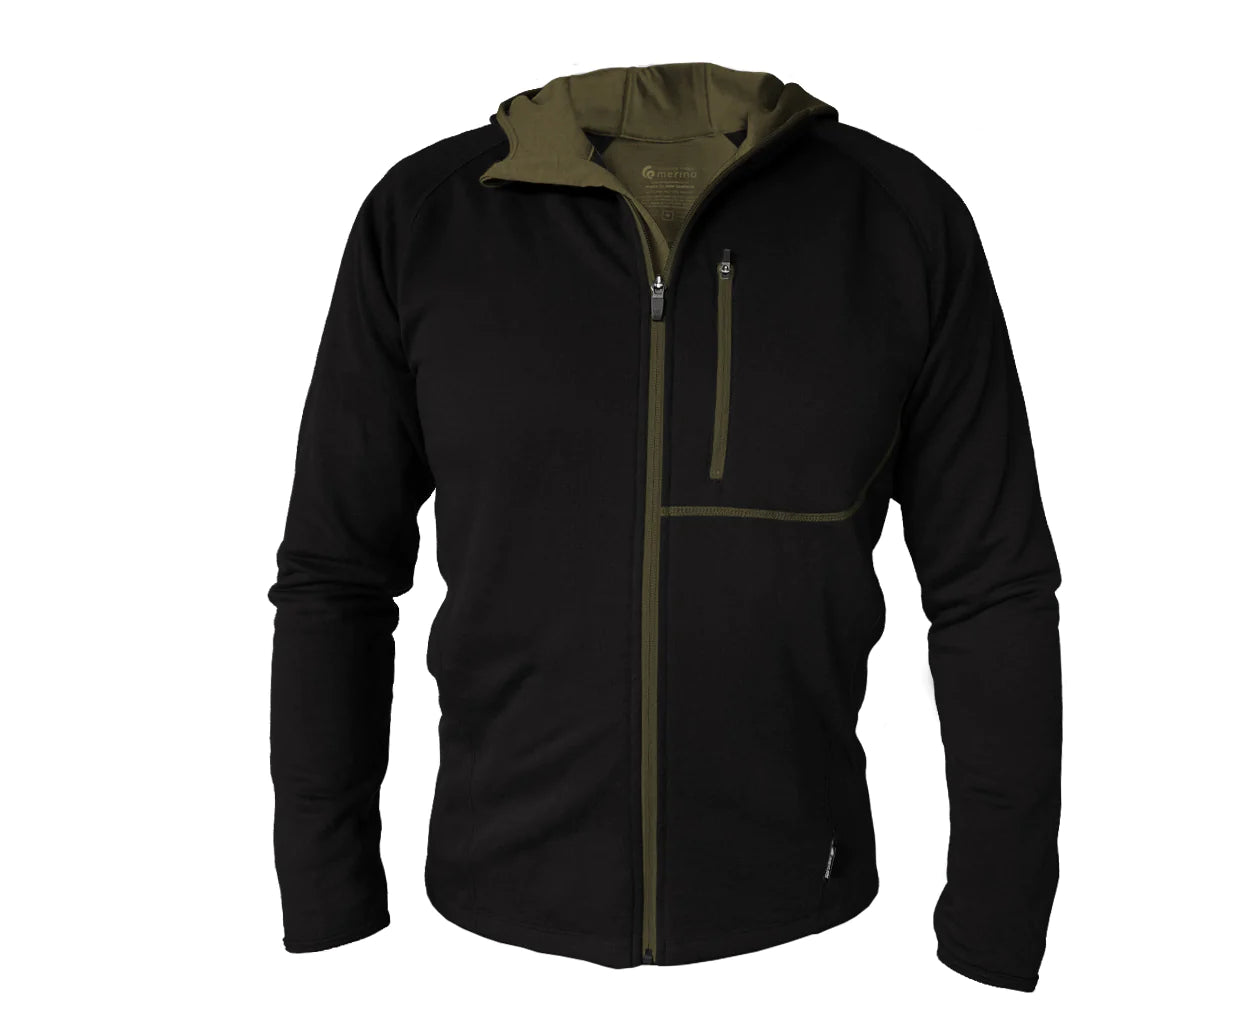 Merino/Tencel Men's Full Zip Jacket with Hood. Made in New Zealand.